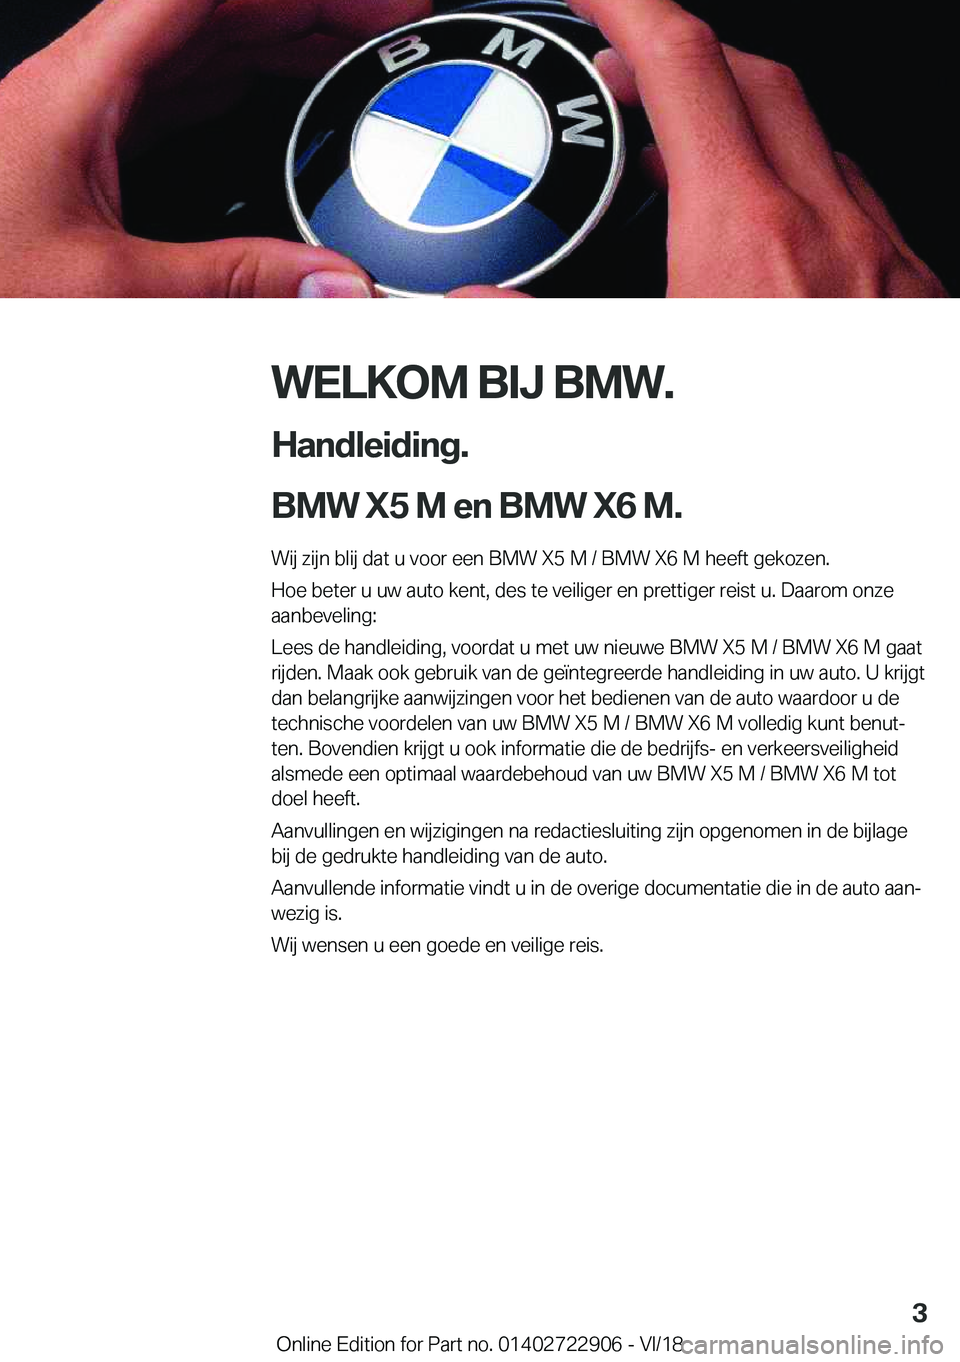 BMW X6 M 2019  Instructieboekjes (in Dutch) �W�E�L�K�O�M��B�I�J��B�M�W�.
�H�a�n�d�l�e�i�d�i�n�g�.
�B�M�W��X�5��M��e�n��B�M�W��X�6��M�. �W�i�j��z�i�j�n��b�l�i�j��d�a�t��u��v�o�o�r��e�e�n��B�M�W��X�5��M��/��B�M�W��X�6��M��h�